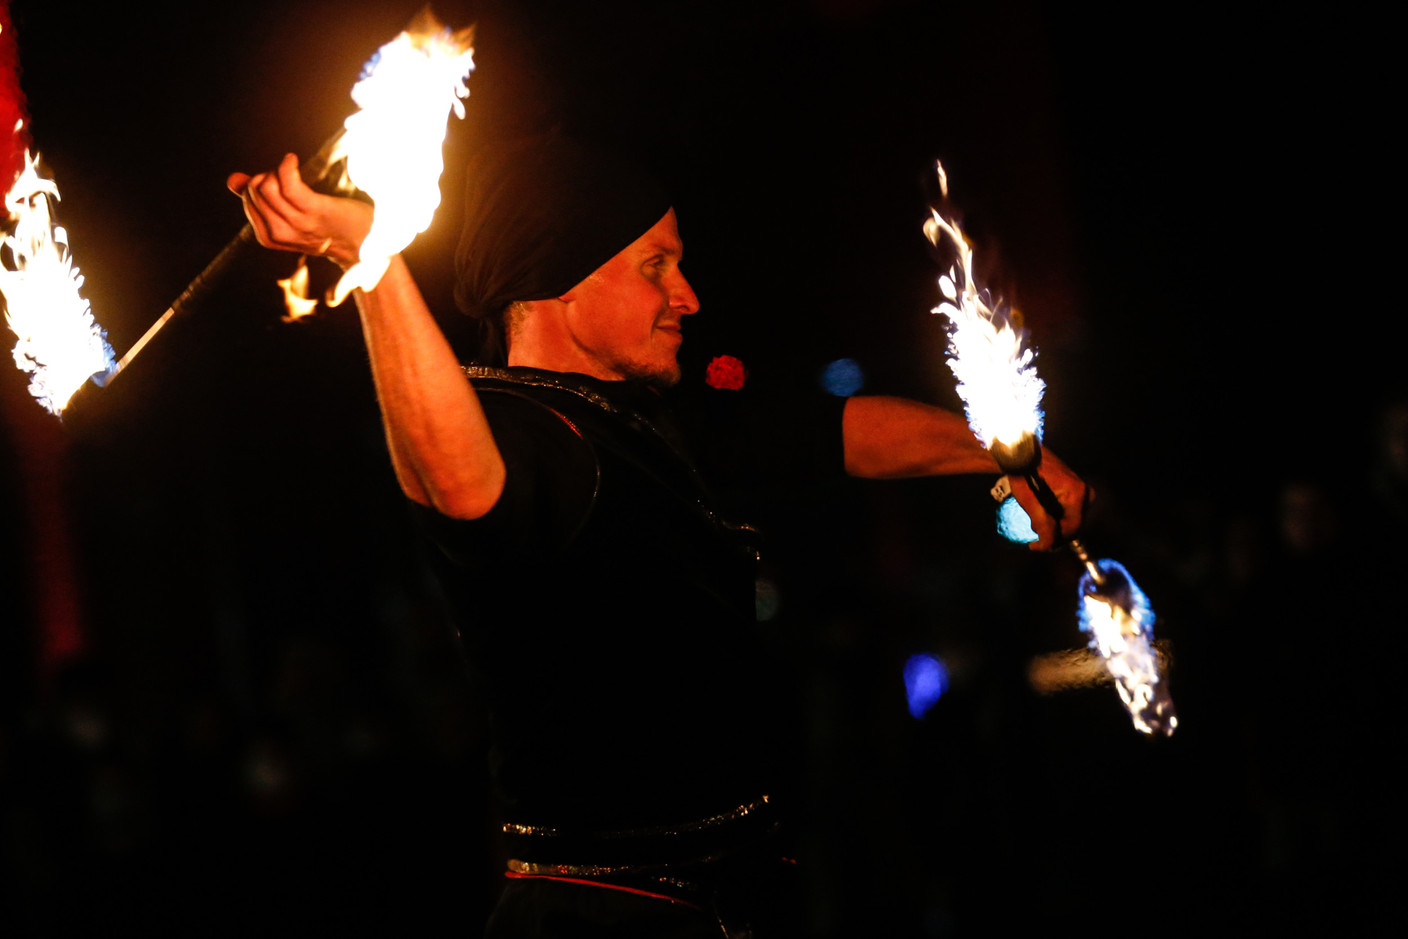 Les jongleurs de feux toujours un spectacle pour le public. (Photo: Guy Wolff/Maison Moderne)